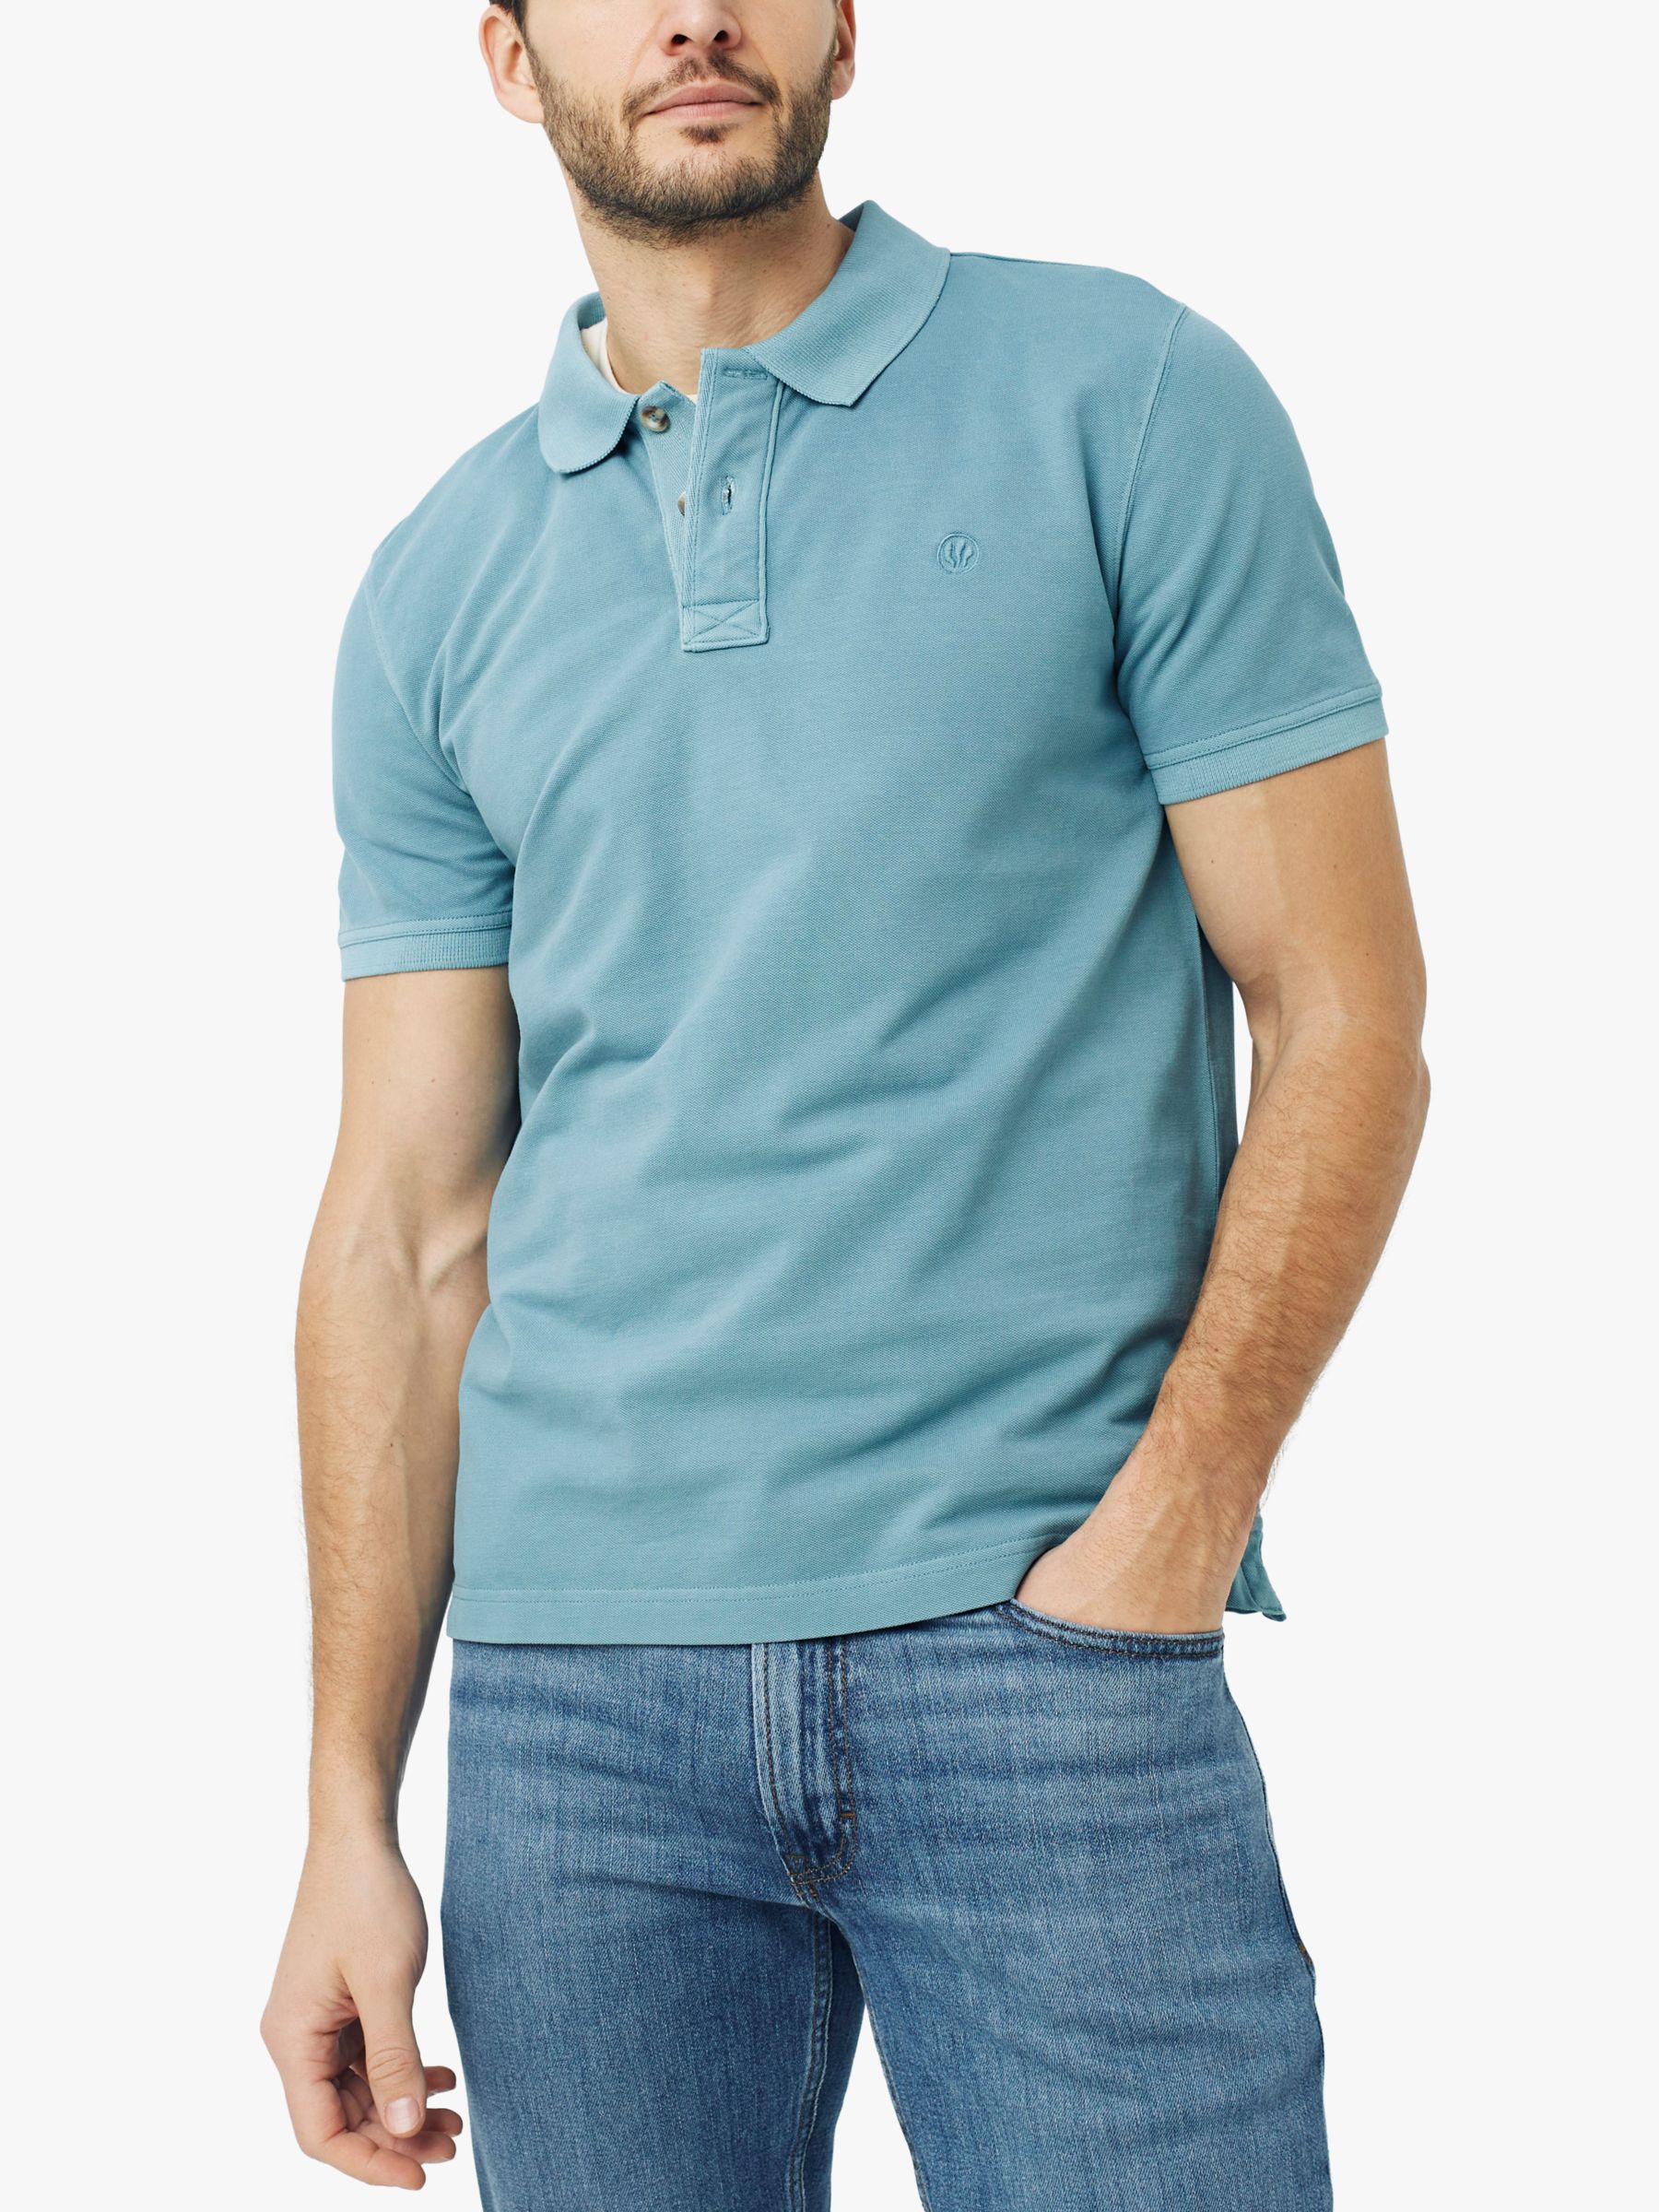 FatFace Piqué Cotton Polo Shirt Ocean Blue XXL male 96% cotton, 4% elastane